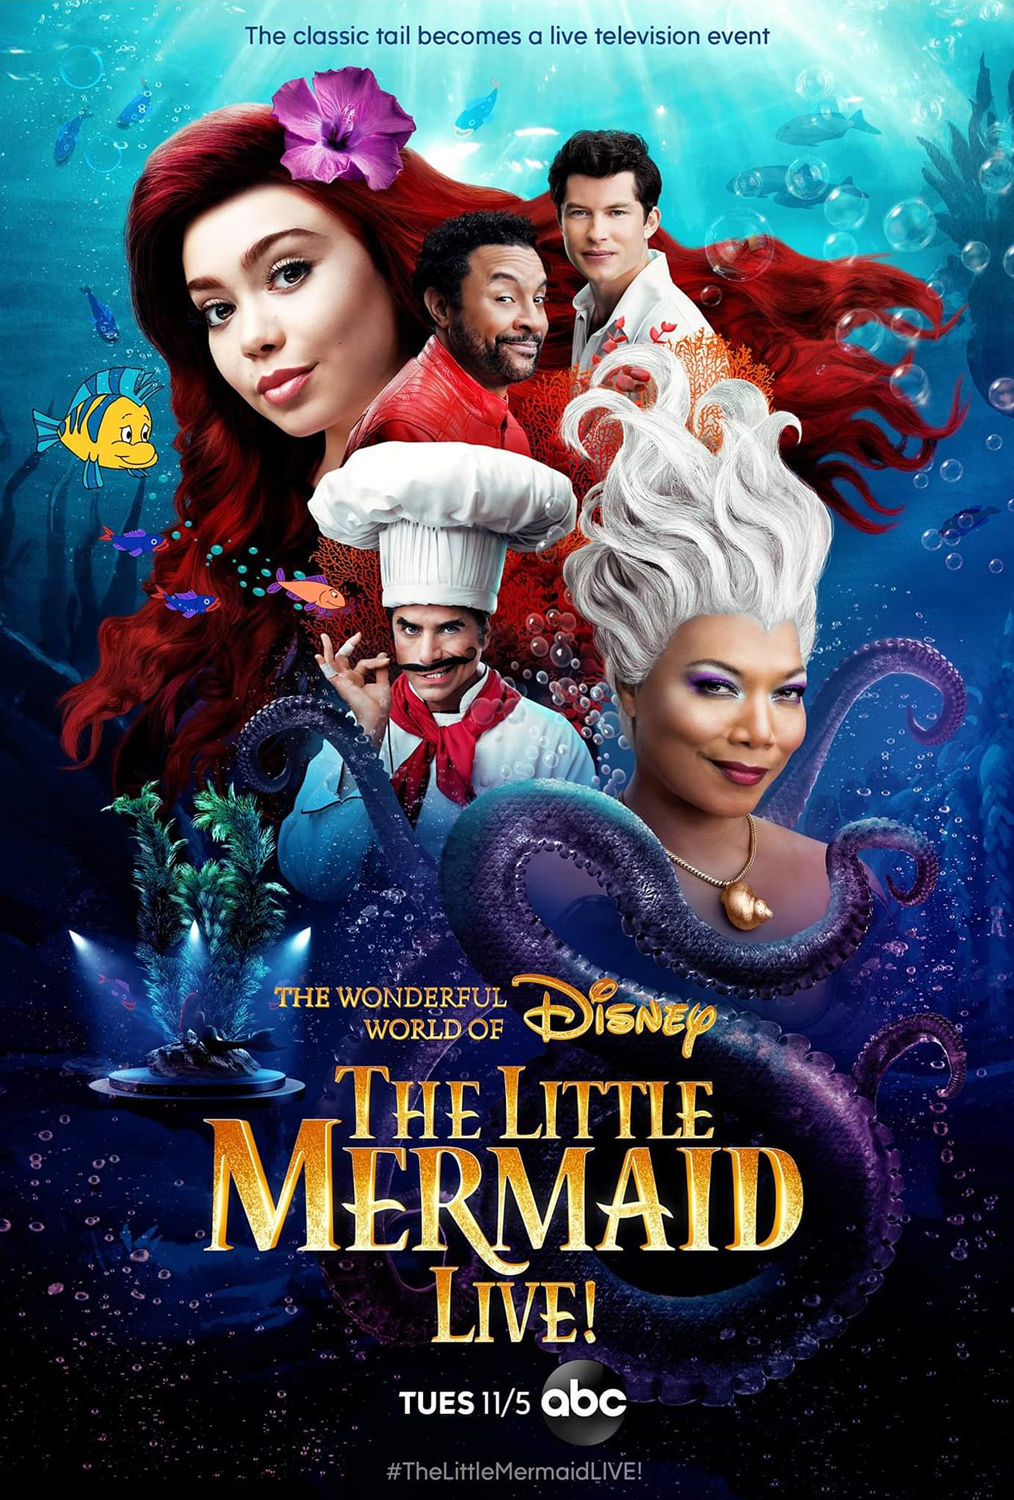 La Petite Sirène : critique d'un Disney noyé